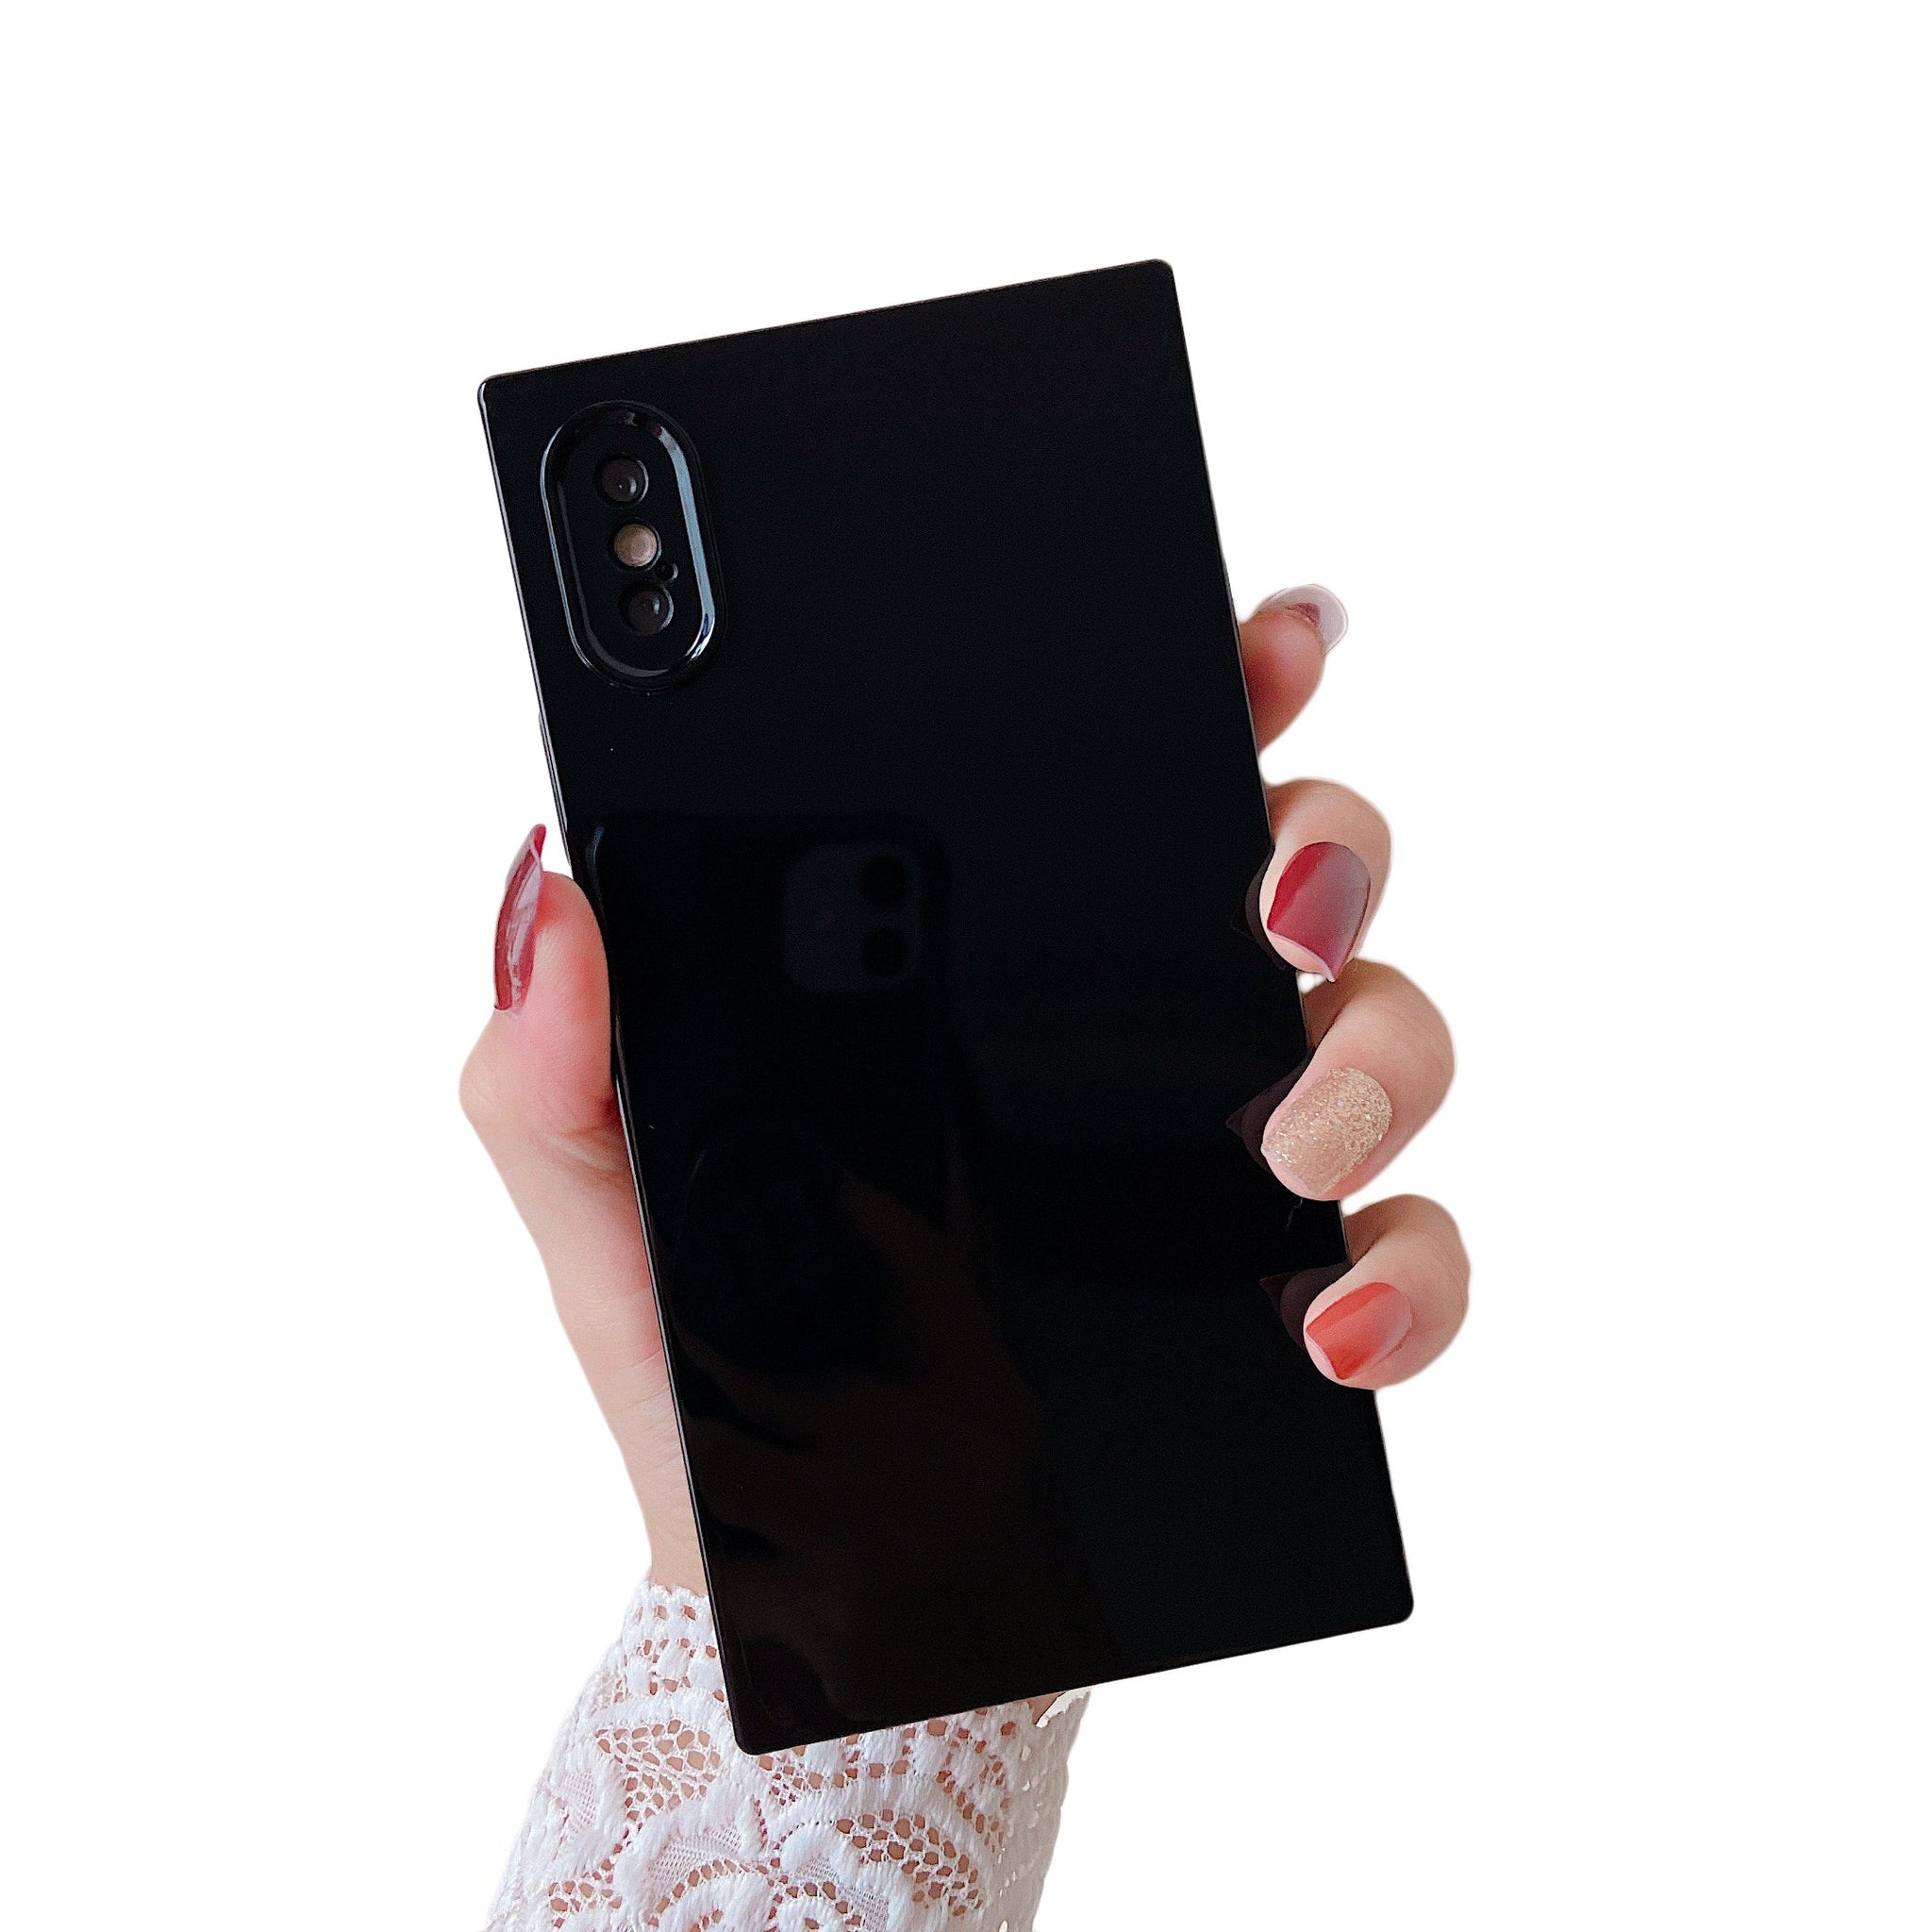 iPhone XR Case Square Plain Color (Black)